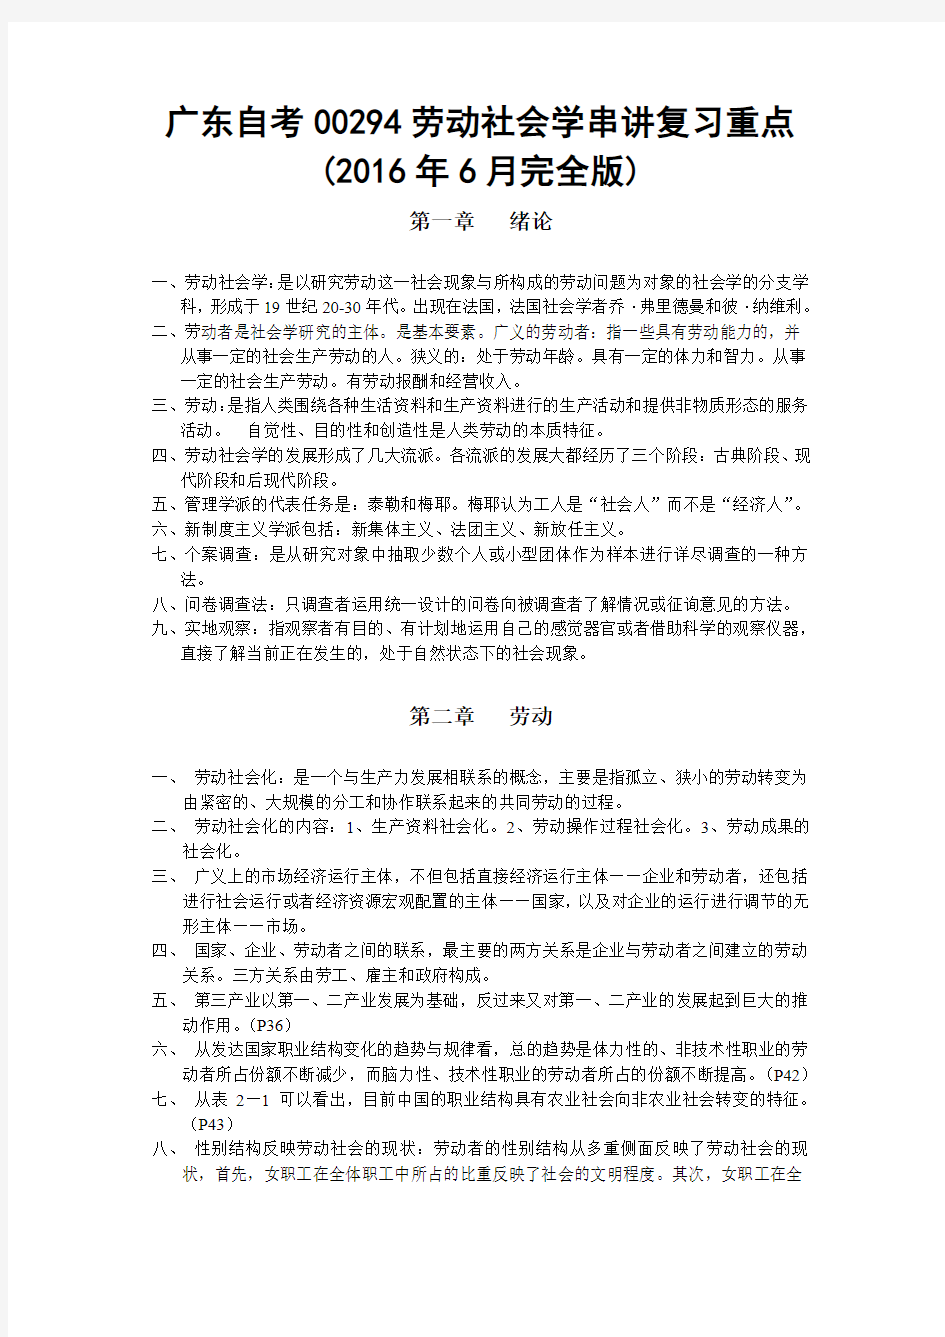 (完整word版)广东自考00294劳动社会学串讲复习重点(2016年6月完全版)